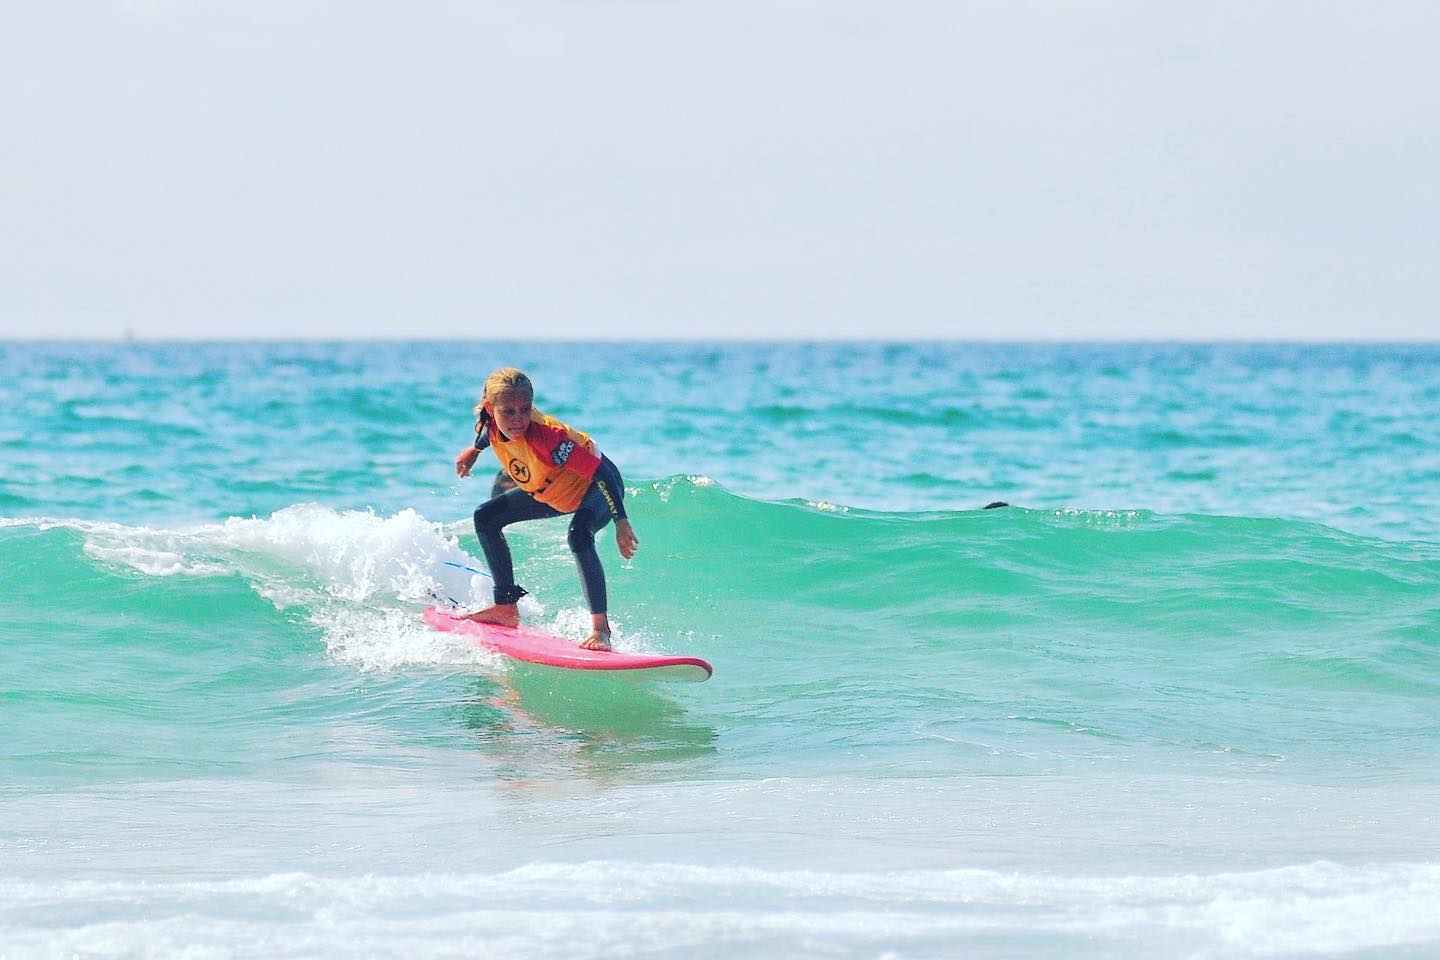 cours de surf particulier 2pers hossegor – ocean adventur